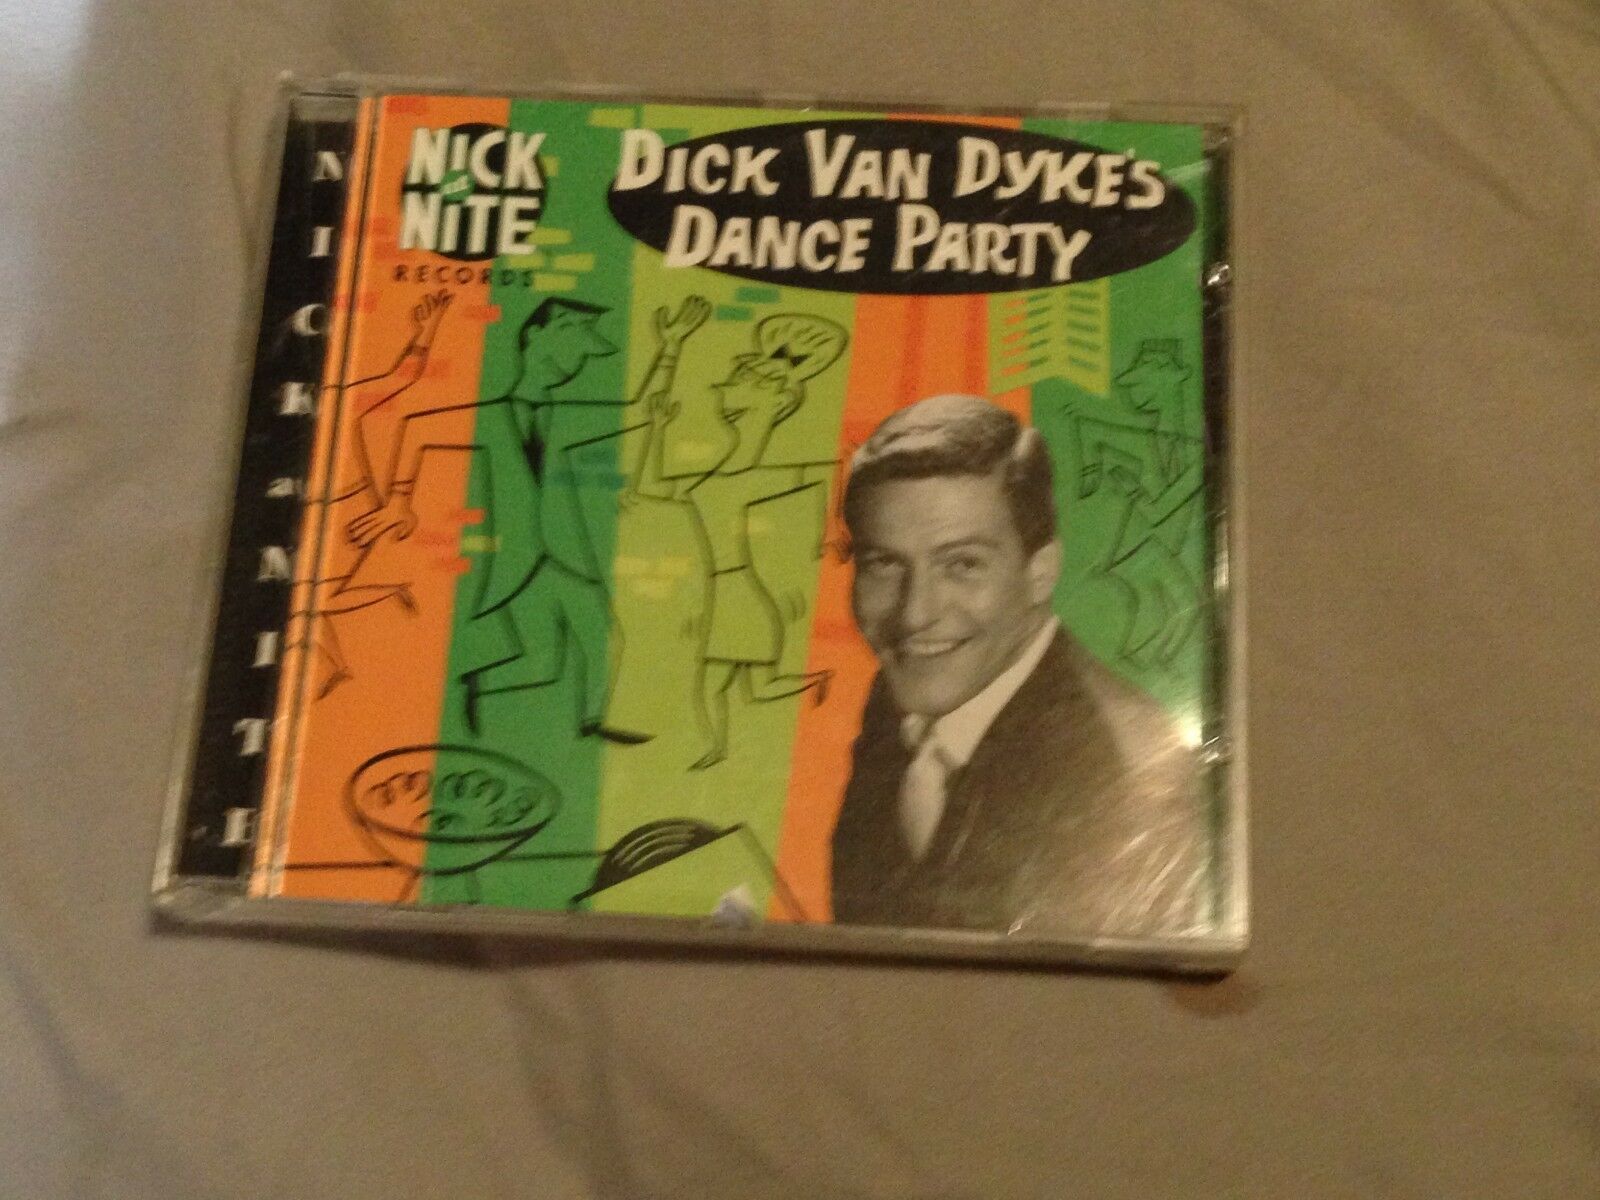 best of Party Dance van dykes dick